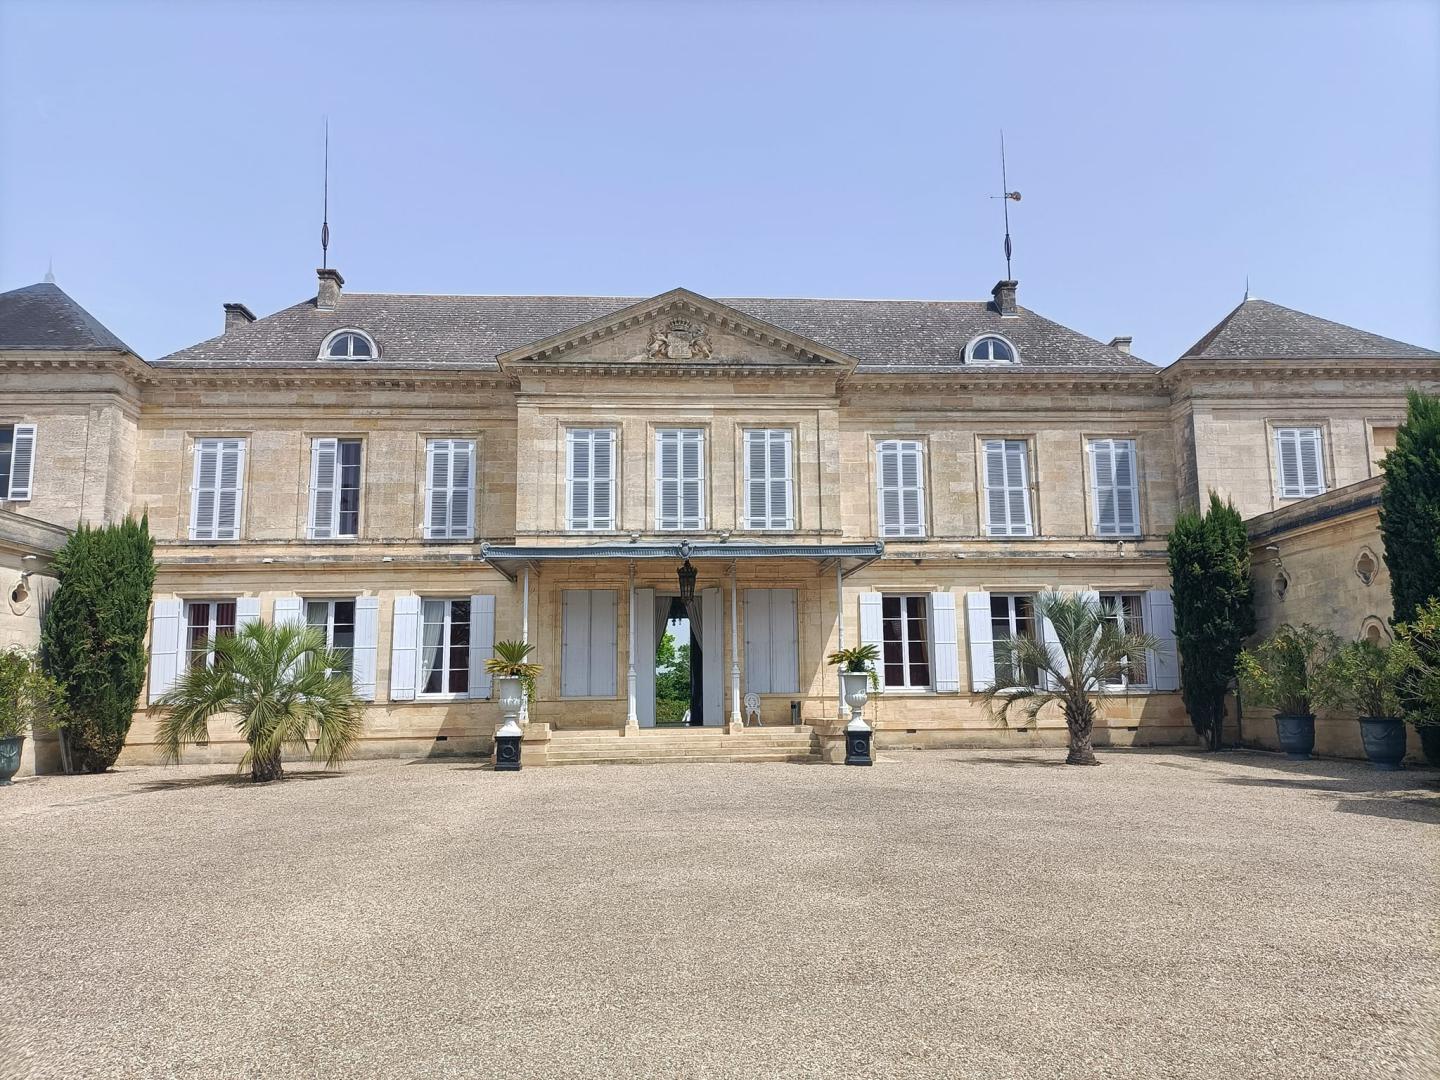 Samedi 21 mai 2022, le groupe ONLY NEW JAZZ BAND était en formule 4tet au Château de Peyronnet à St-Louis-de-Montferrand (33), pour l'animation du mariage d'Emilie et Jean-Charles !